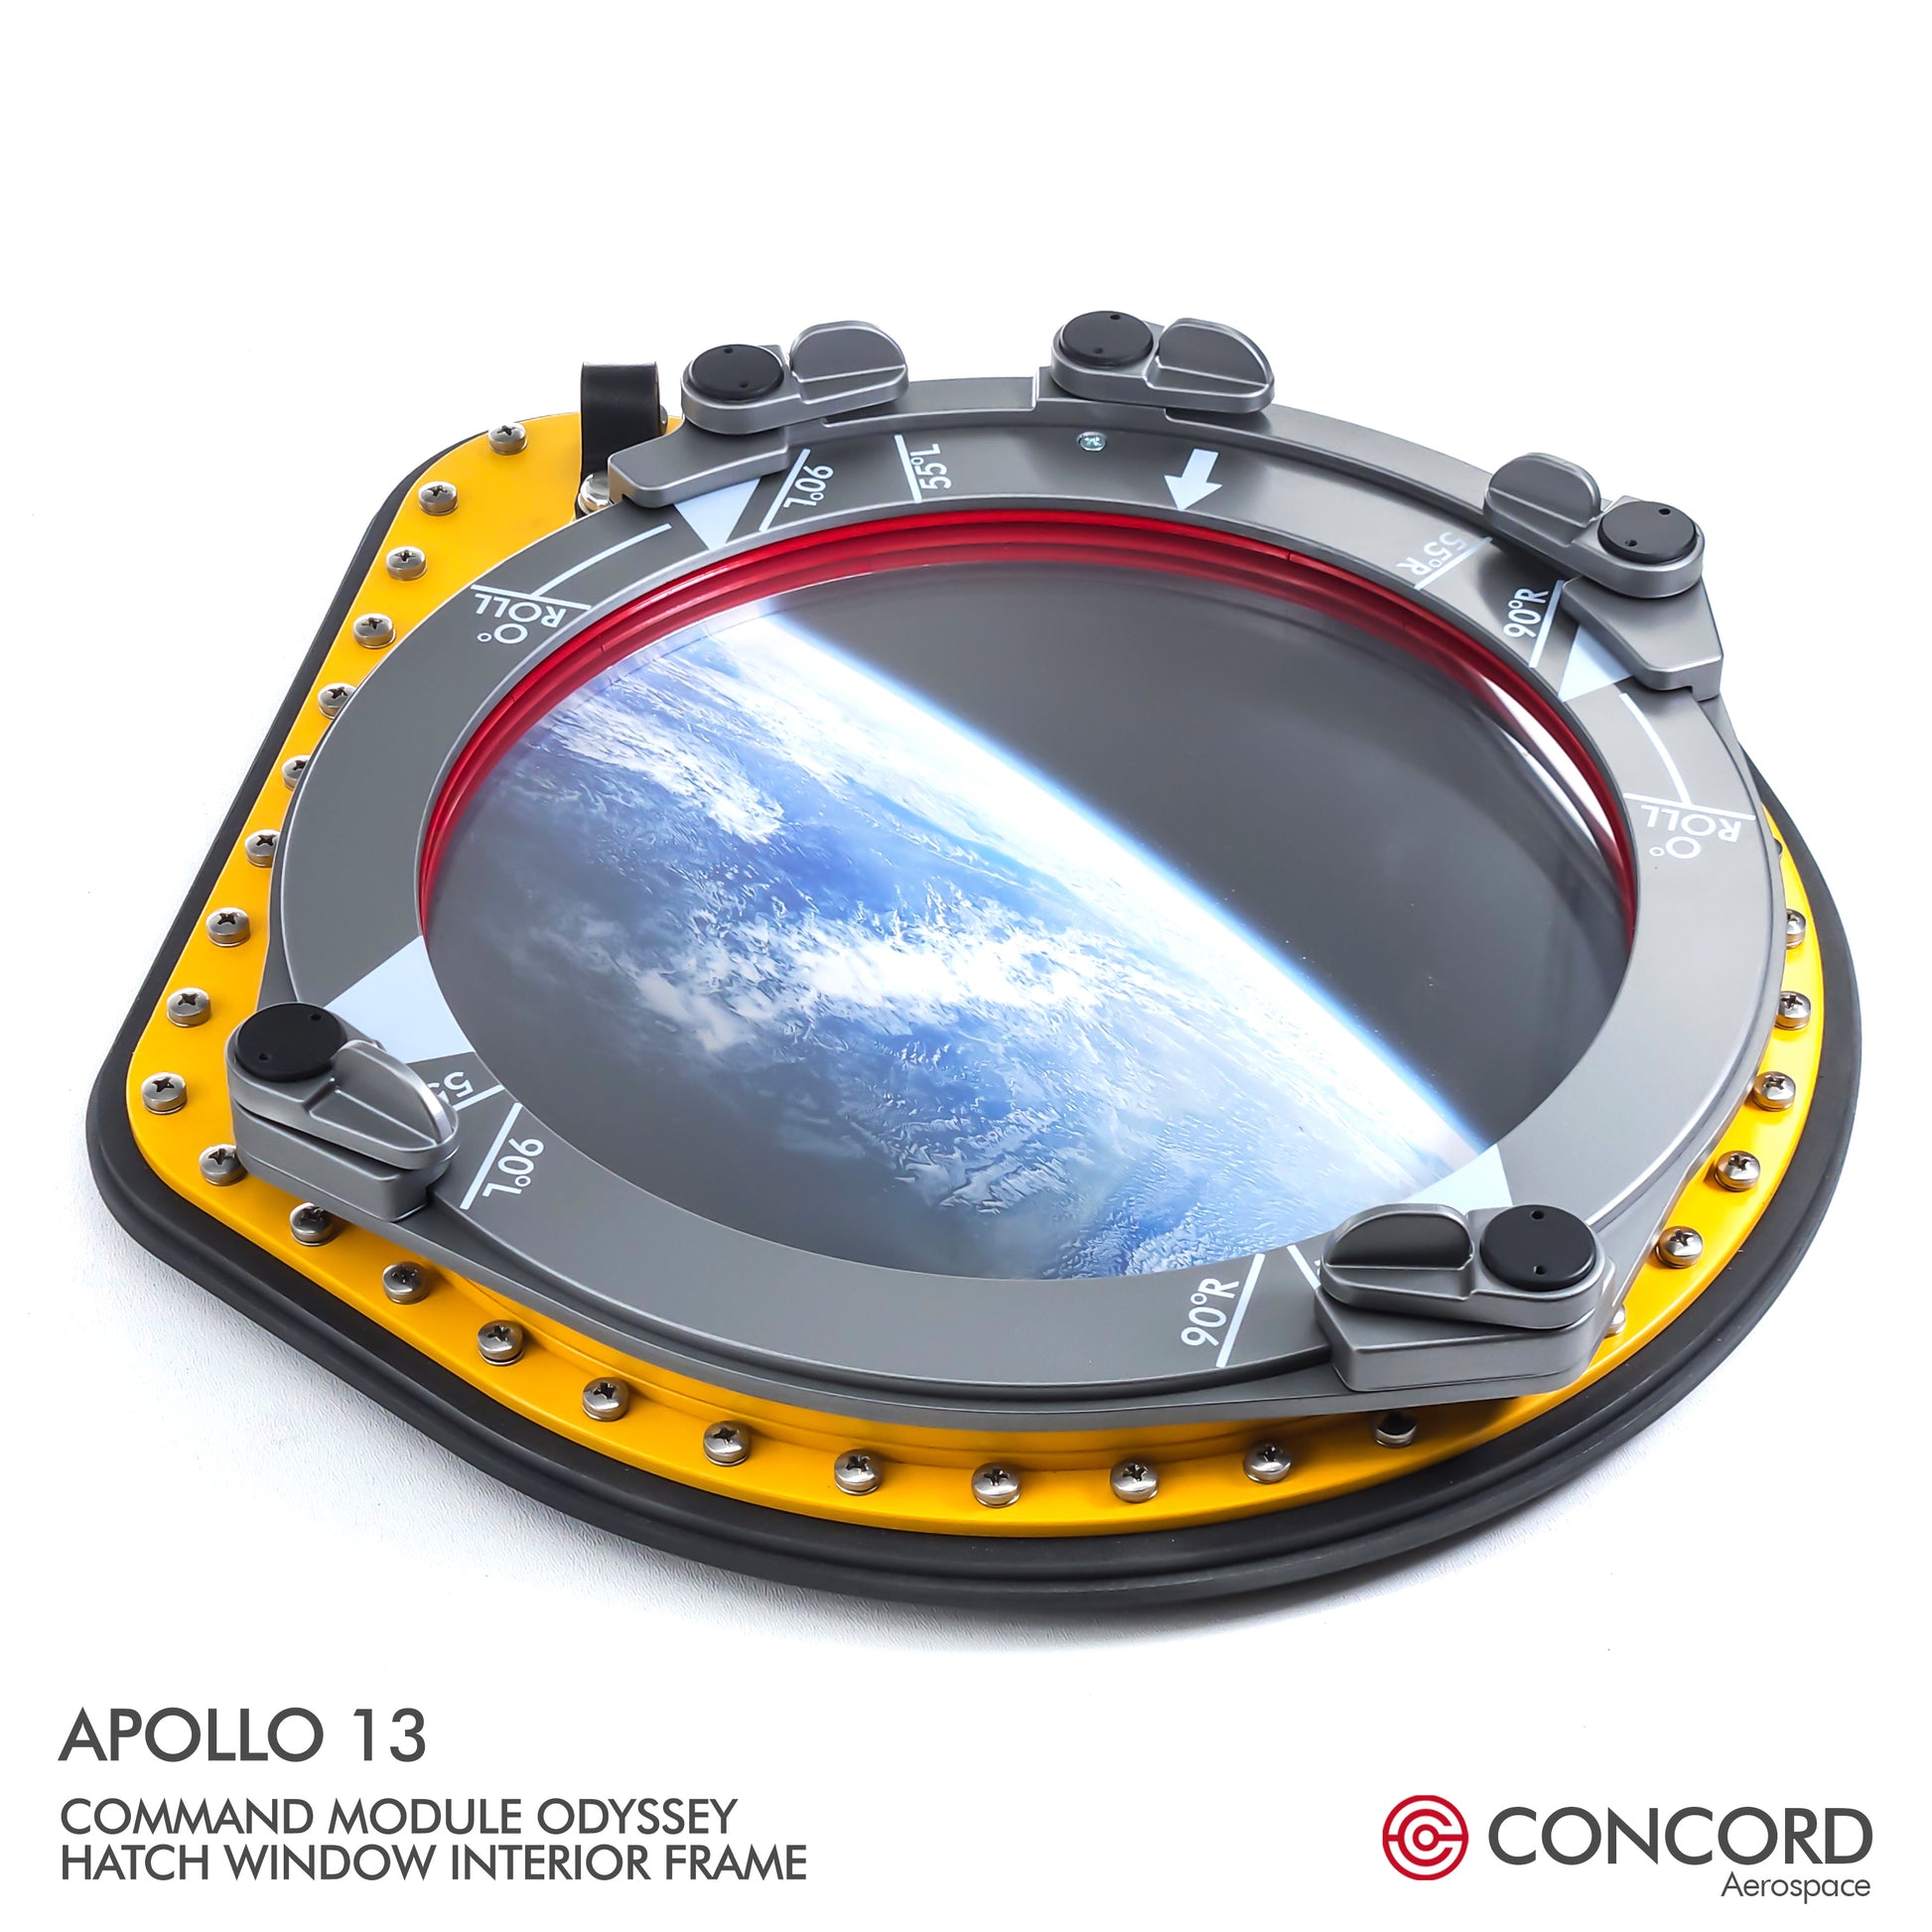 APOLLO 13 COMMAND MODULE ODYSSEY HATCH WINDOW - Concord Aerospace